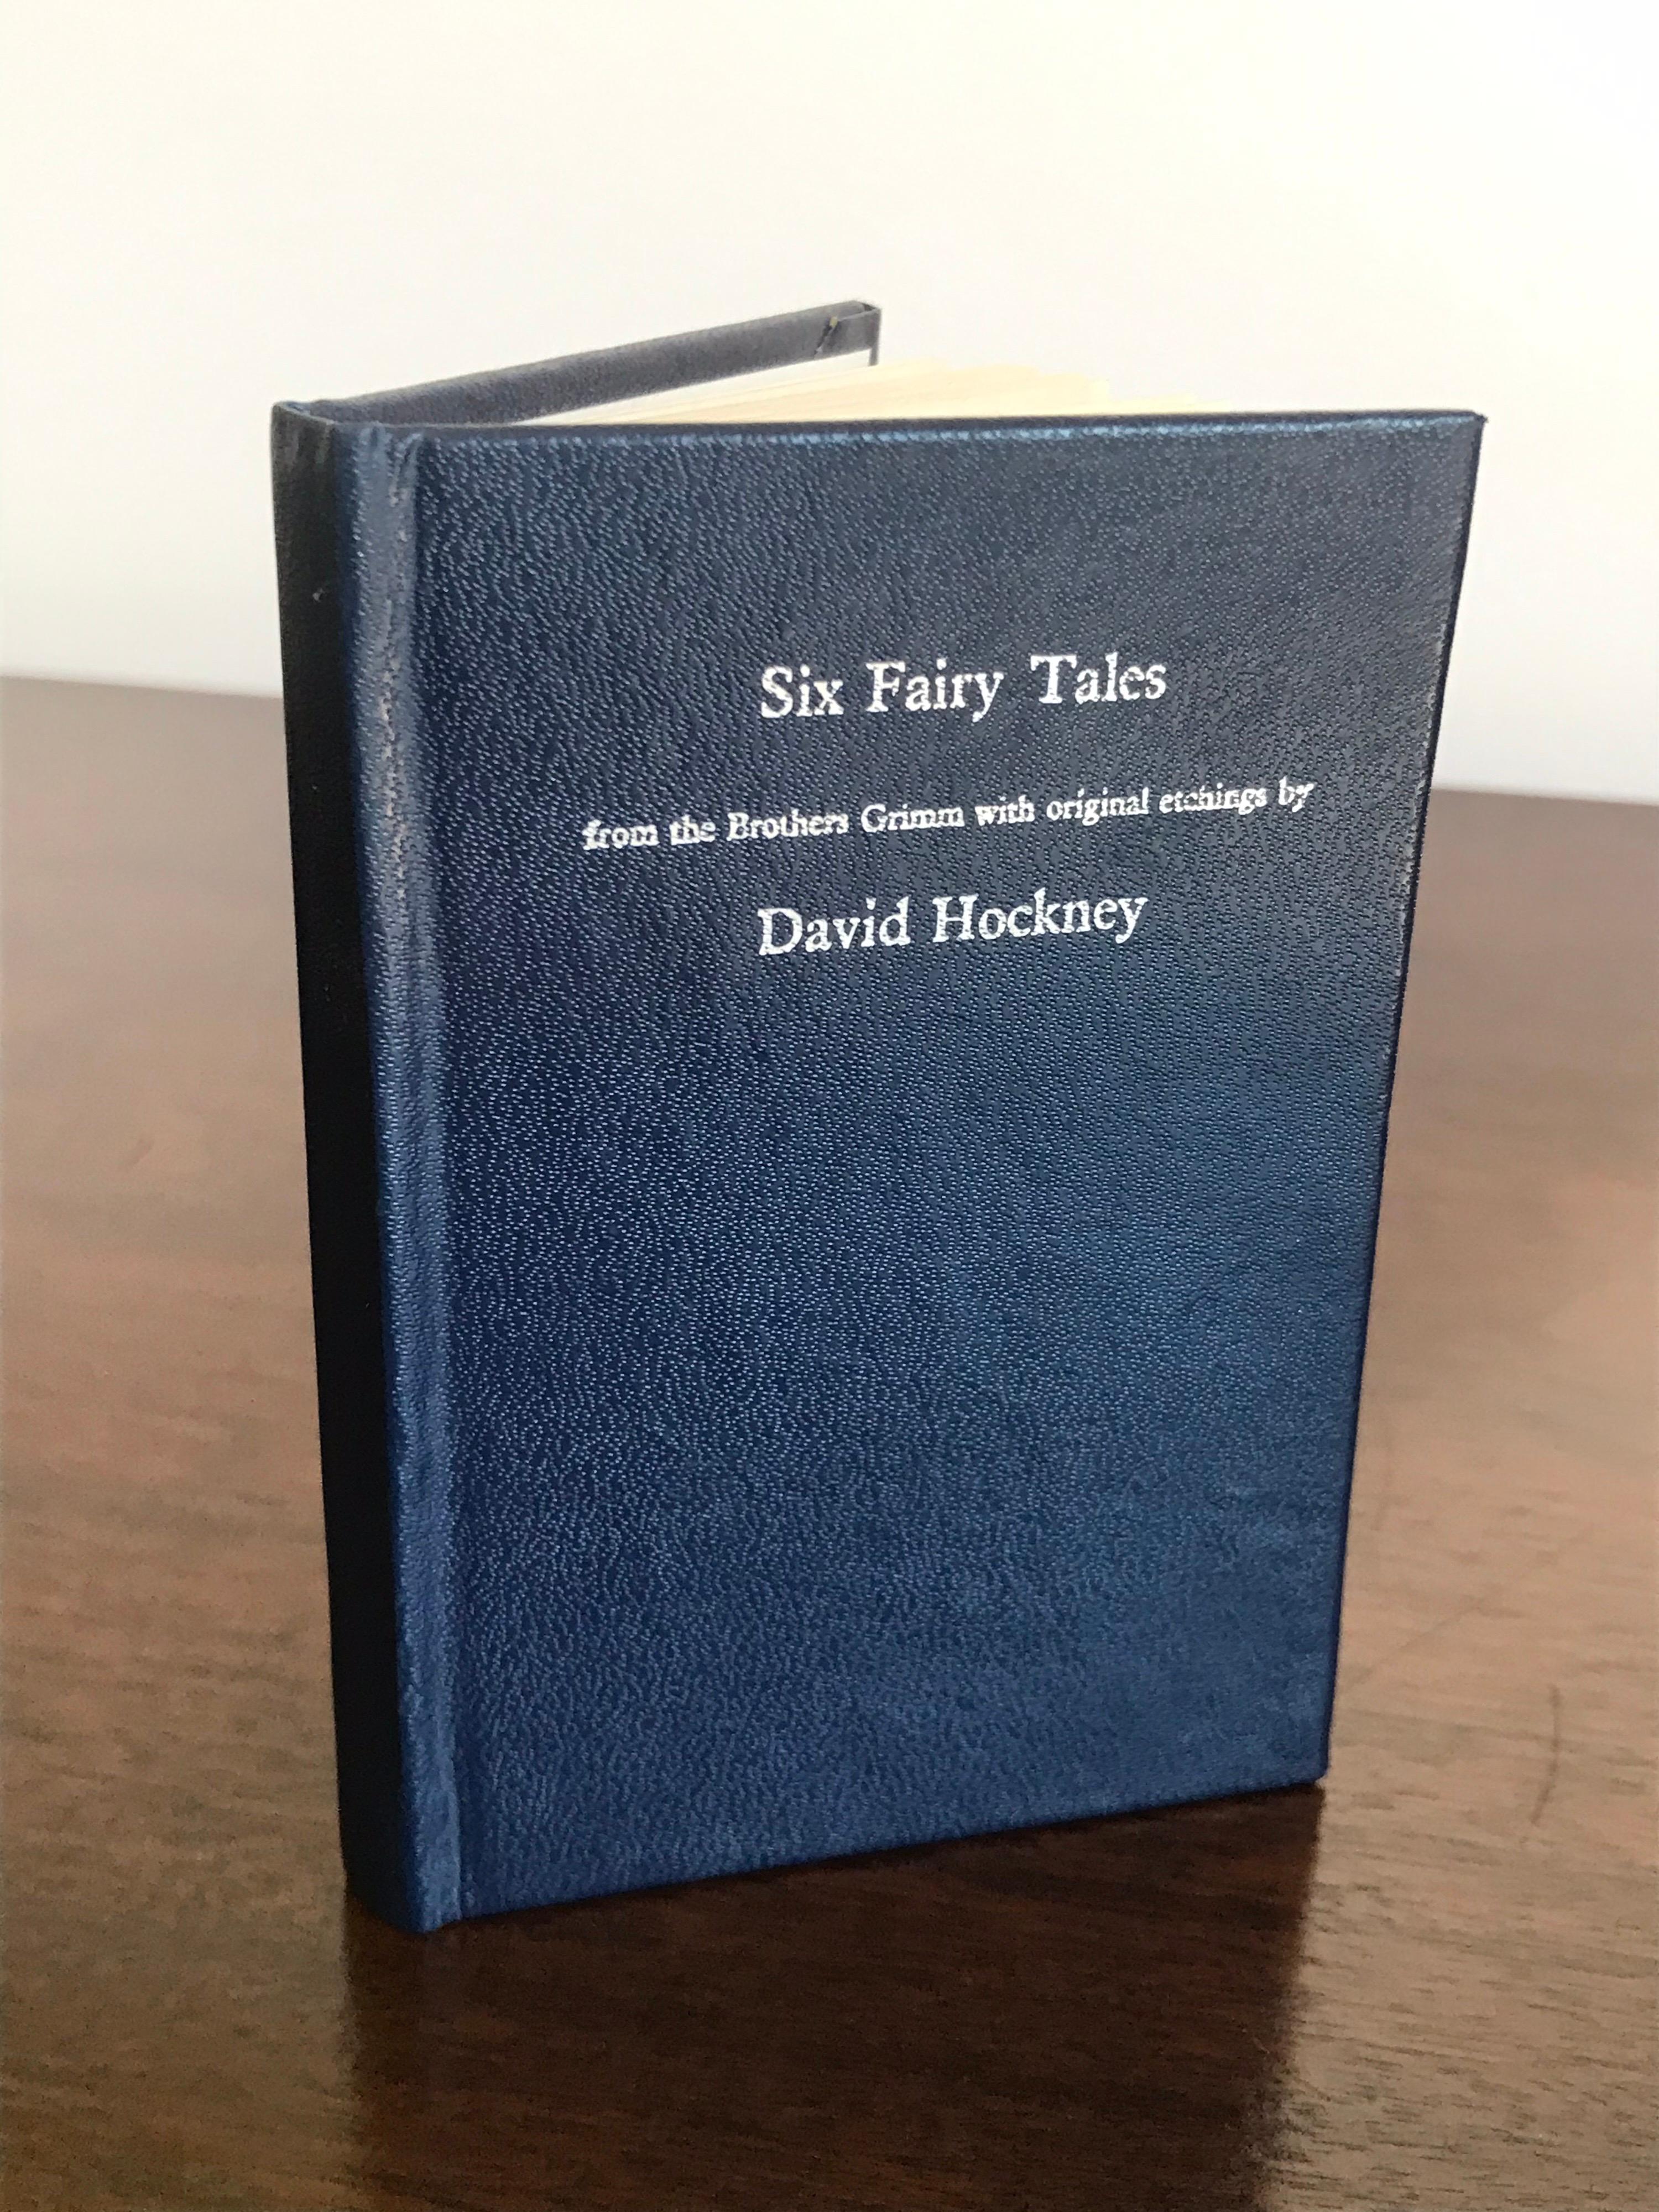 david hockney signed book